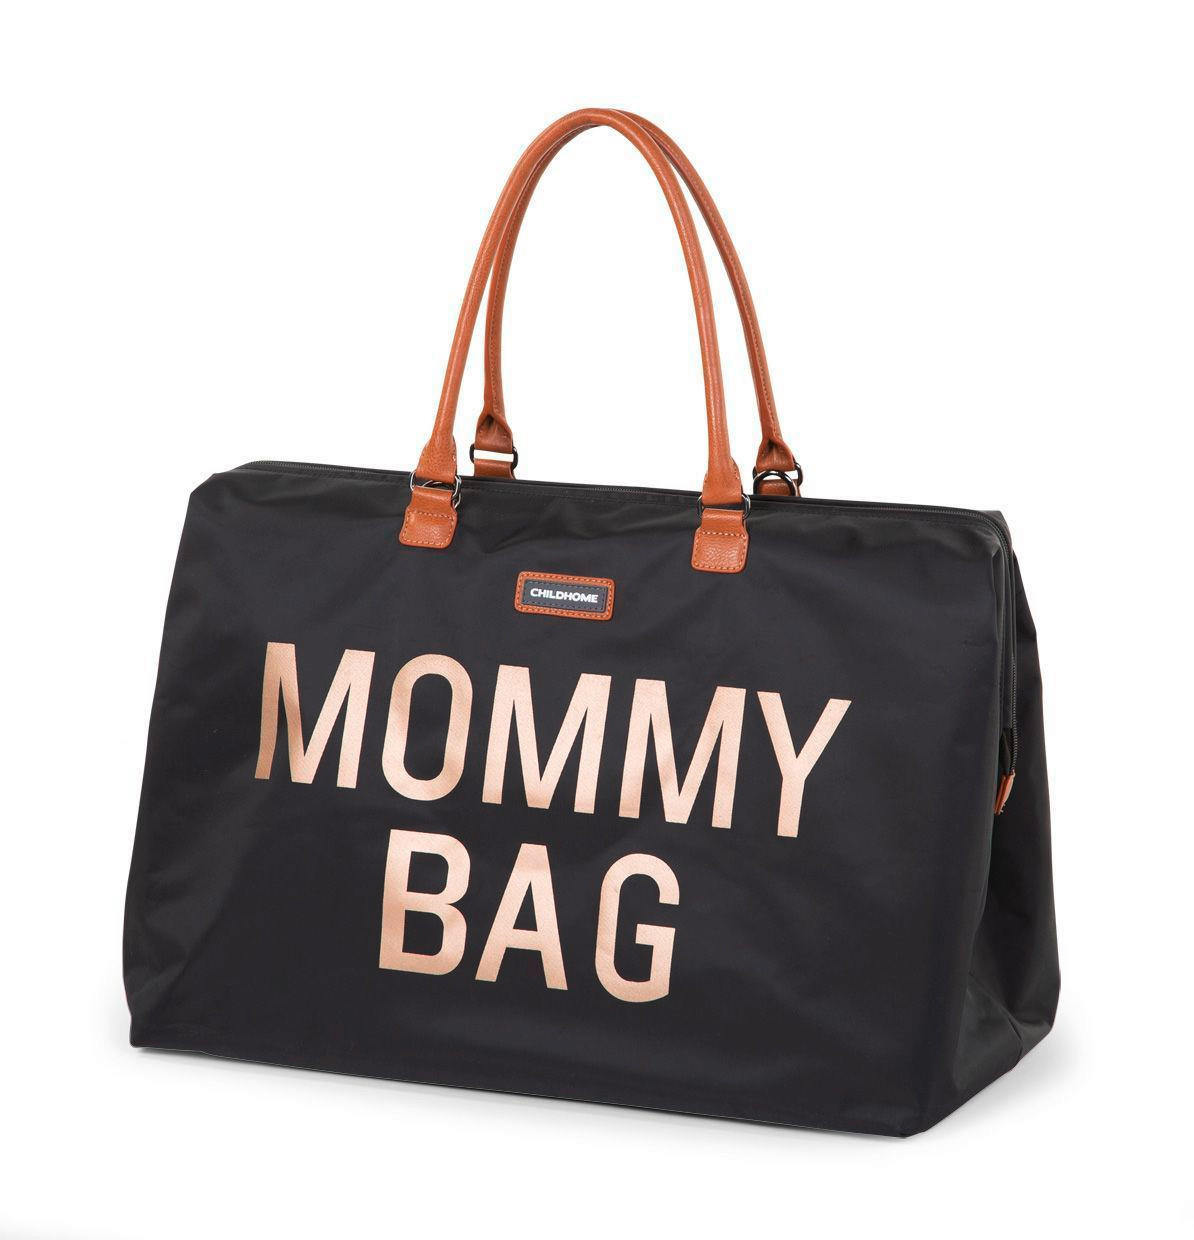 WICKELTASCHE  Childhome Mommy Bag   - Schwarz/Grau, Basics, Textil (30cm) - Childhome